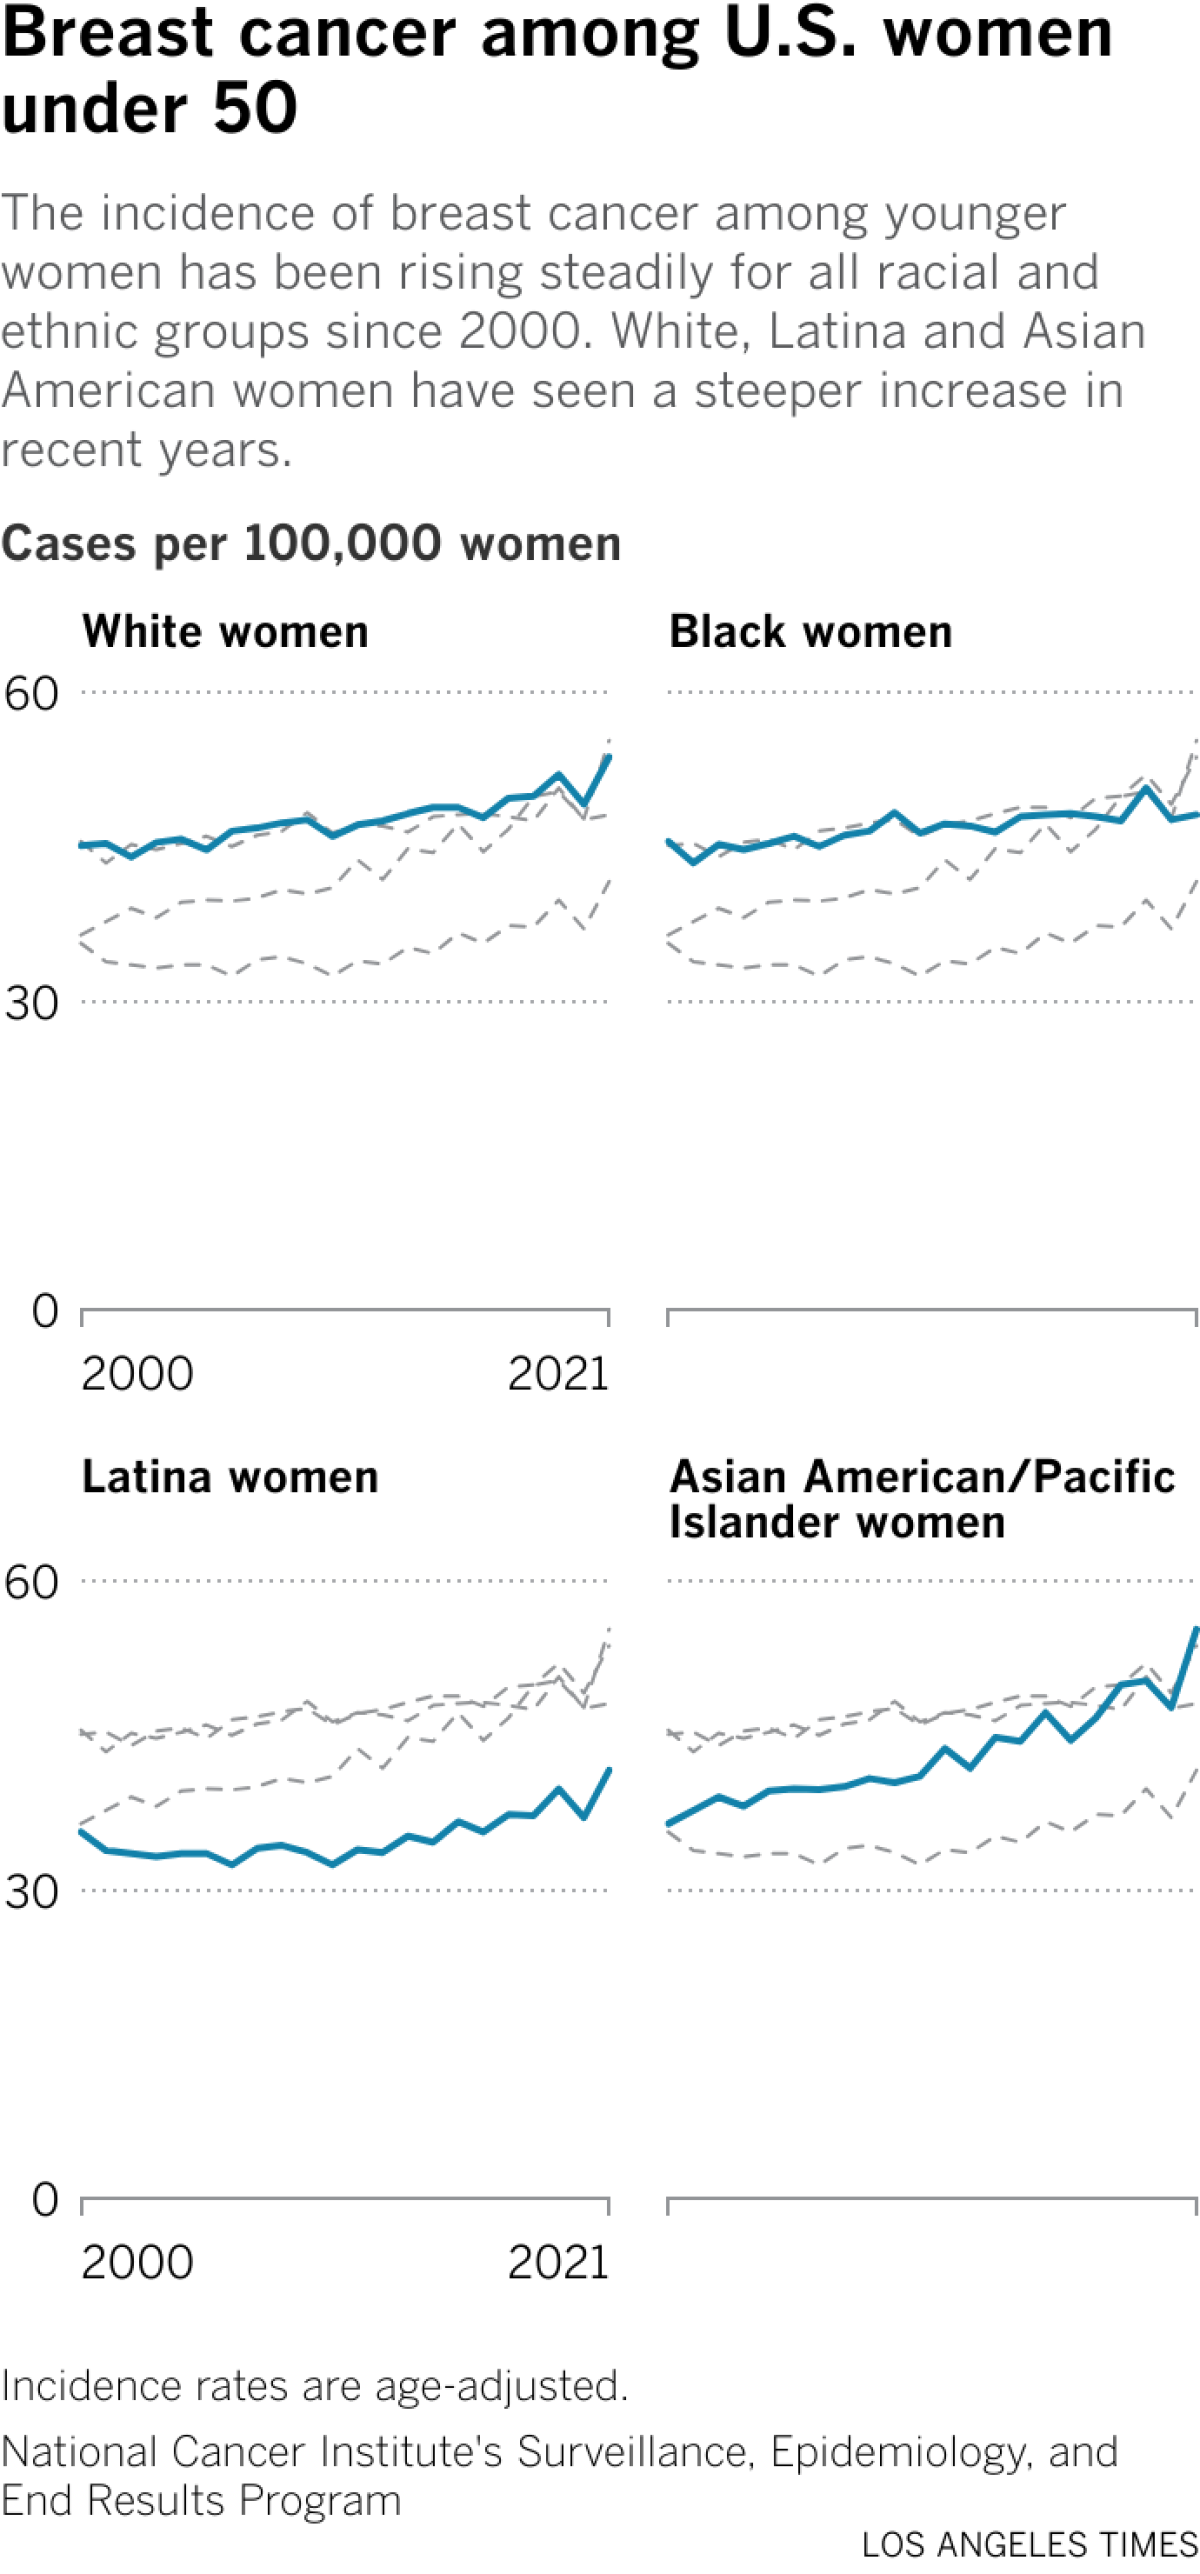 Um gráfico de linhas compara as taxas de câncer de mama em mulheres com menos de 50 anos por raça.  Em 2021, a taxa para mulheres brancas era de 53,7 casos por 100 mil mulheres.  A taxa para mulheres negras era de 48,1;  para mulheres latinas, 41,6;  e para mulheres asiático-americanas/das ilhas do Pacífico, 55,3.